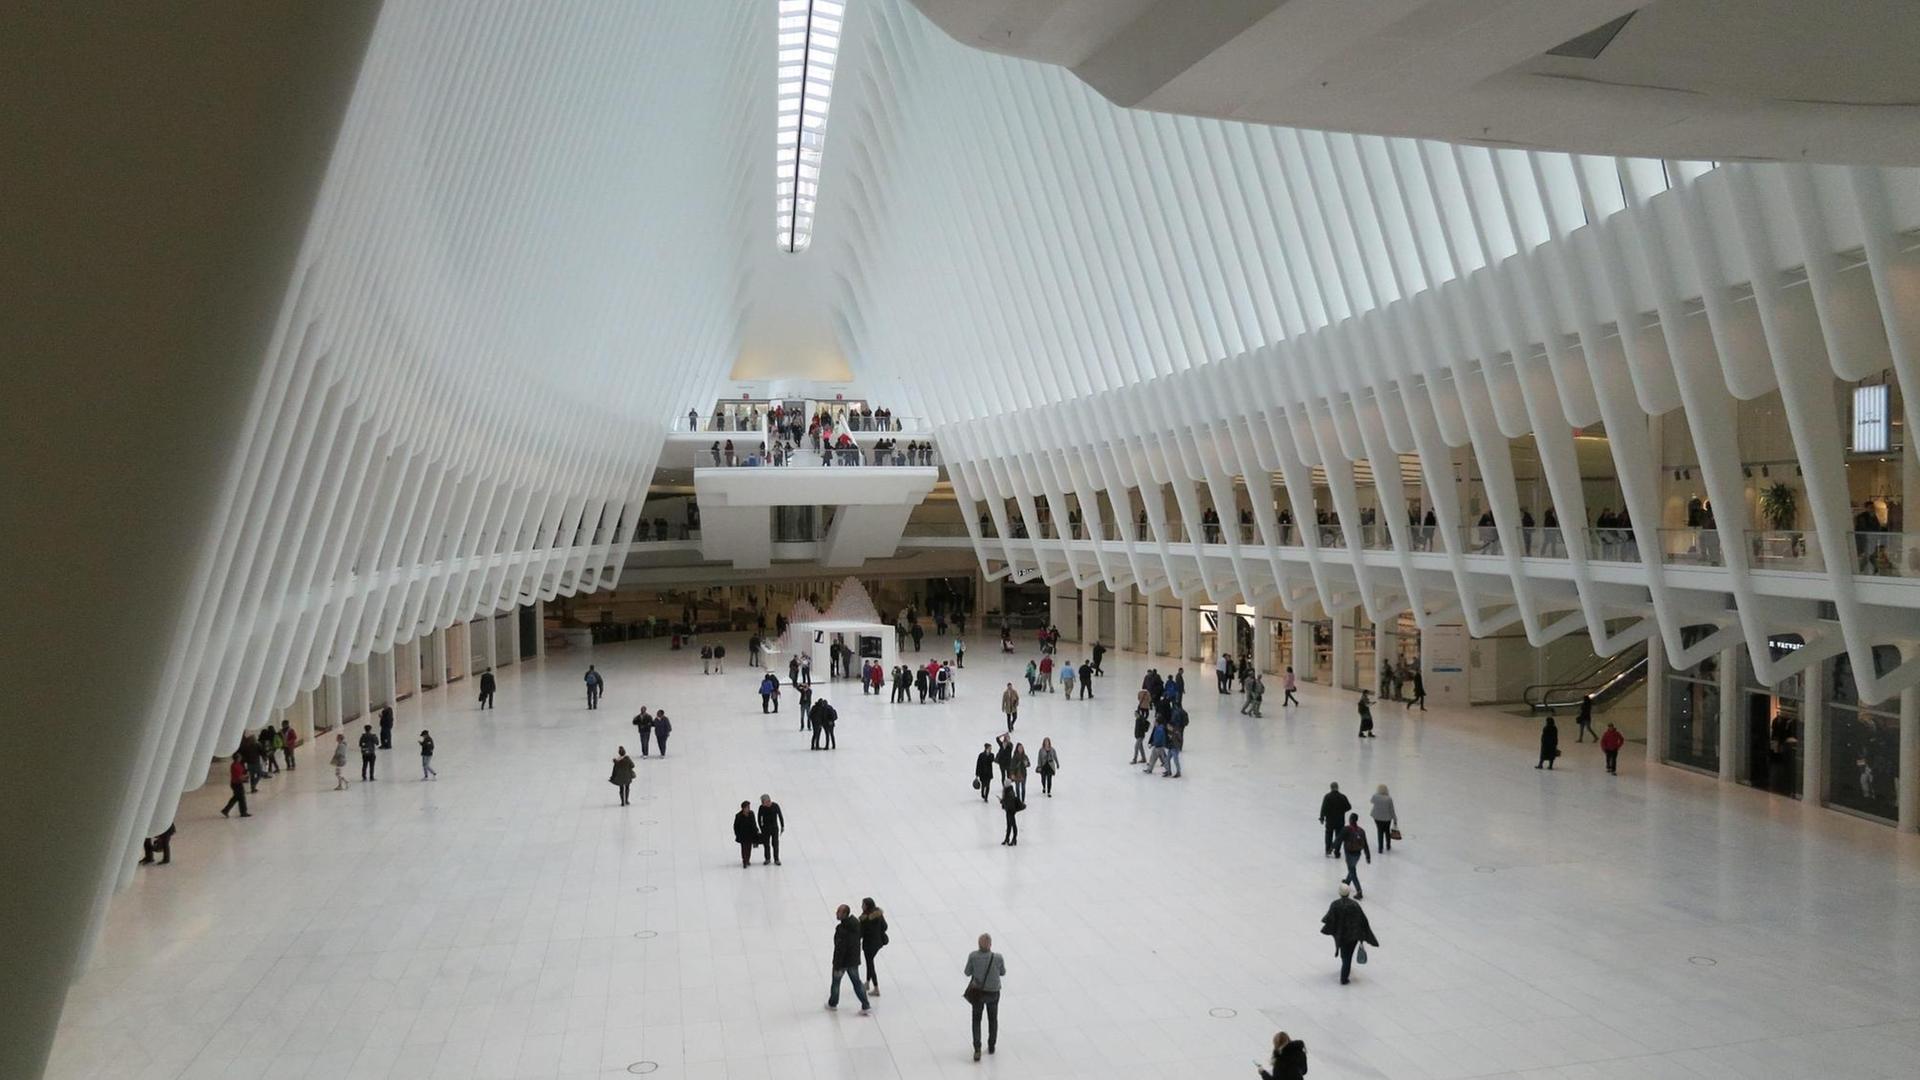 Die 2016 eingeweihte Haupthalle des Bahnhofs "World Trade Center" in Manhattan. Entworfen vom spanischen Architekten Santiago Calatrava Valls.